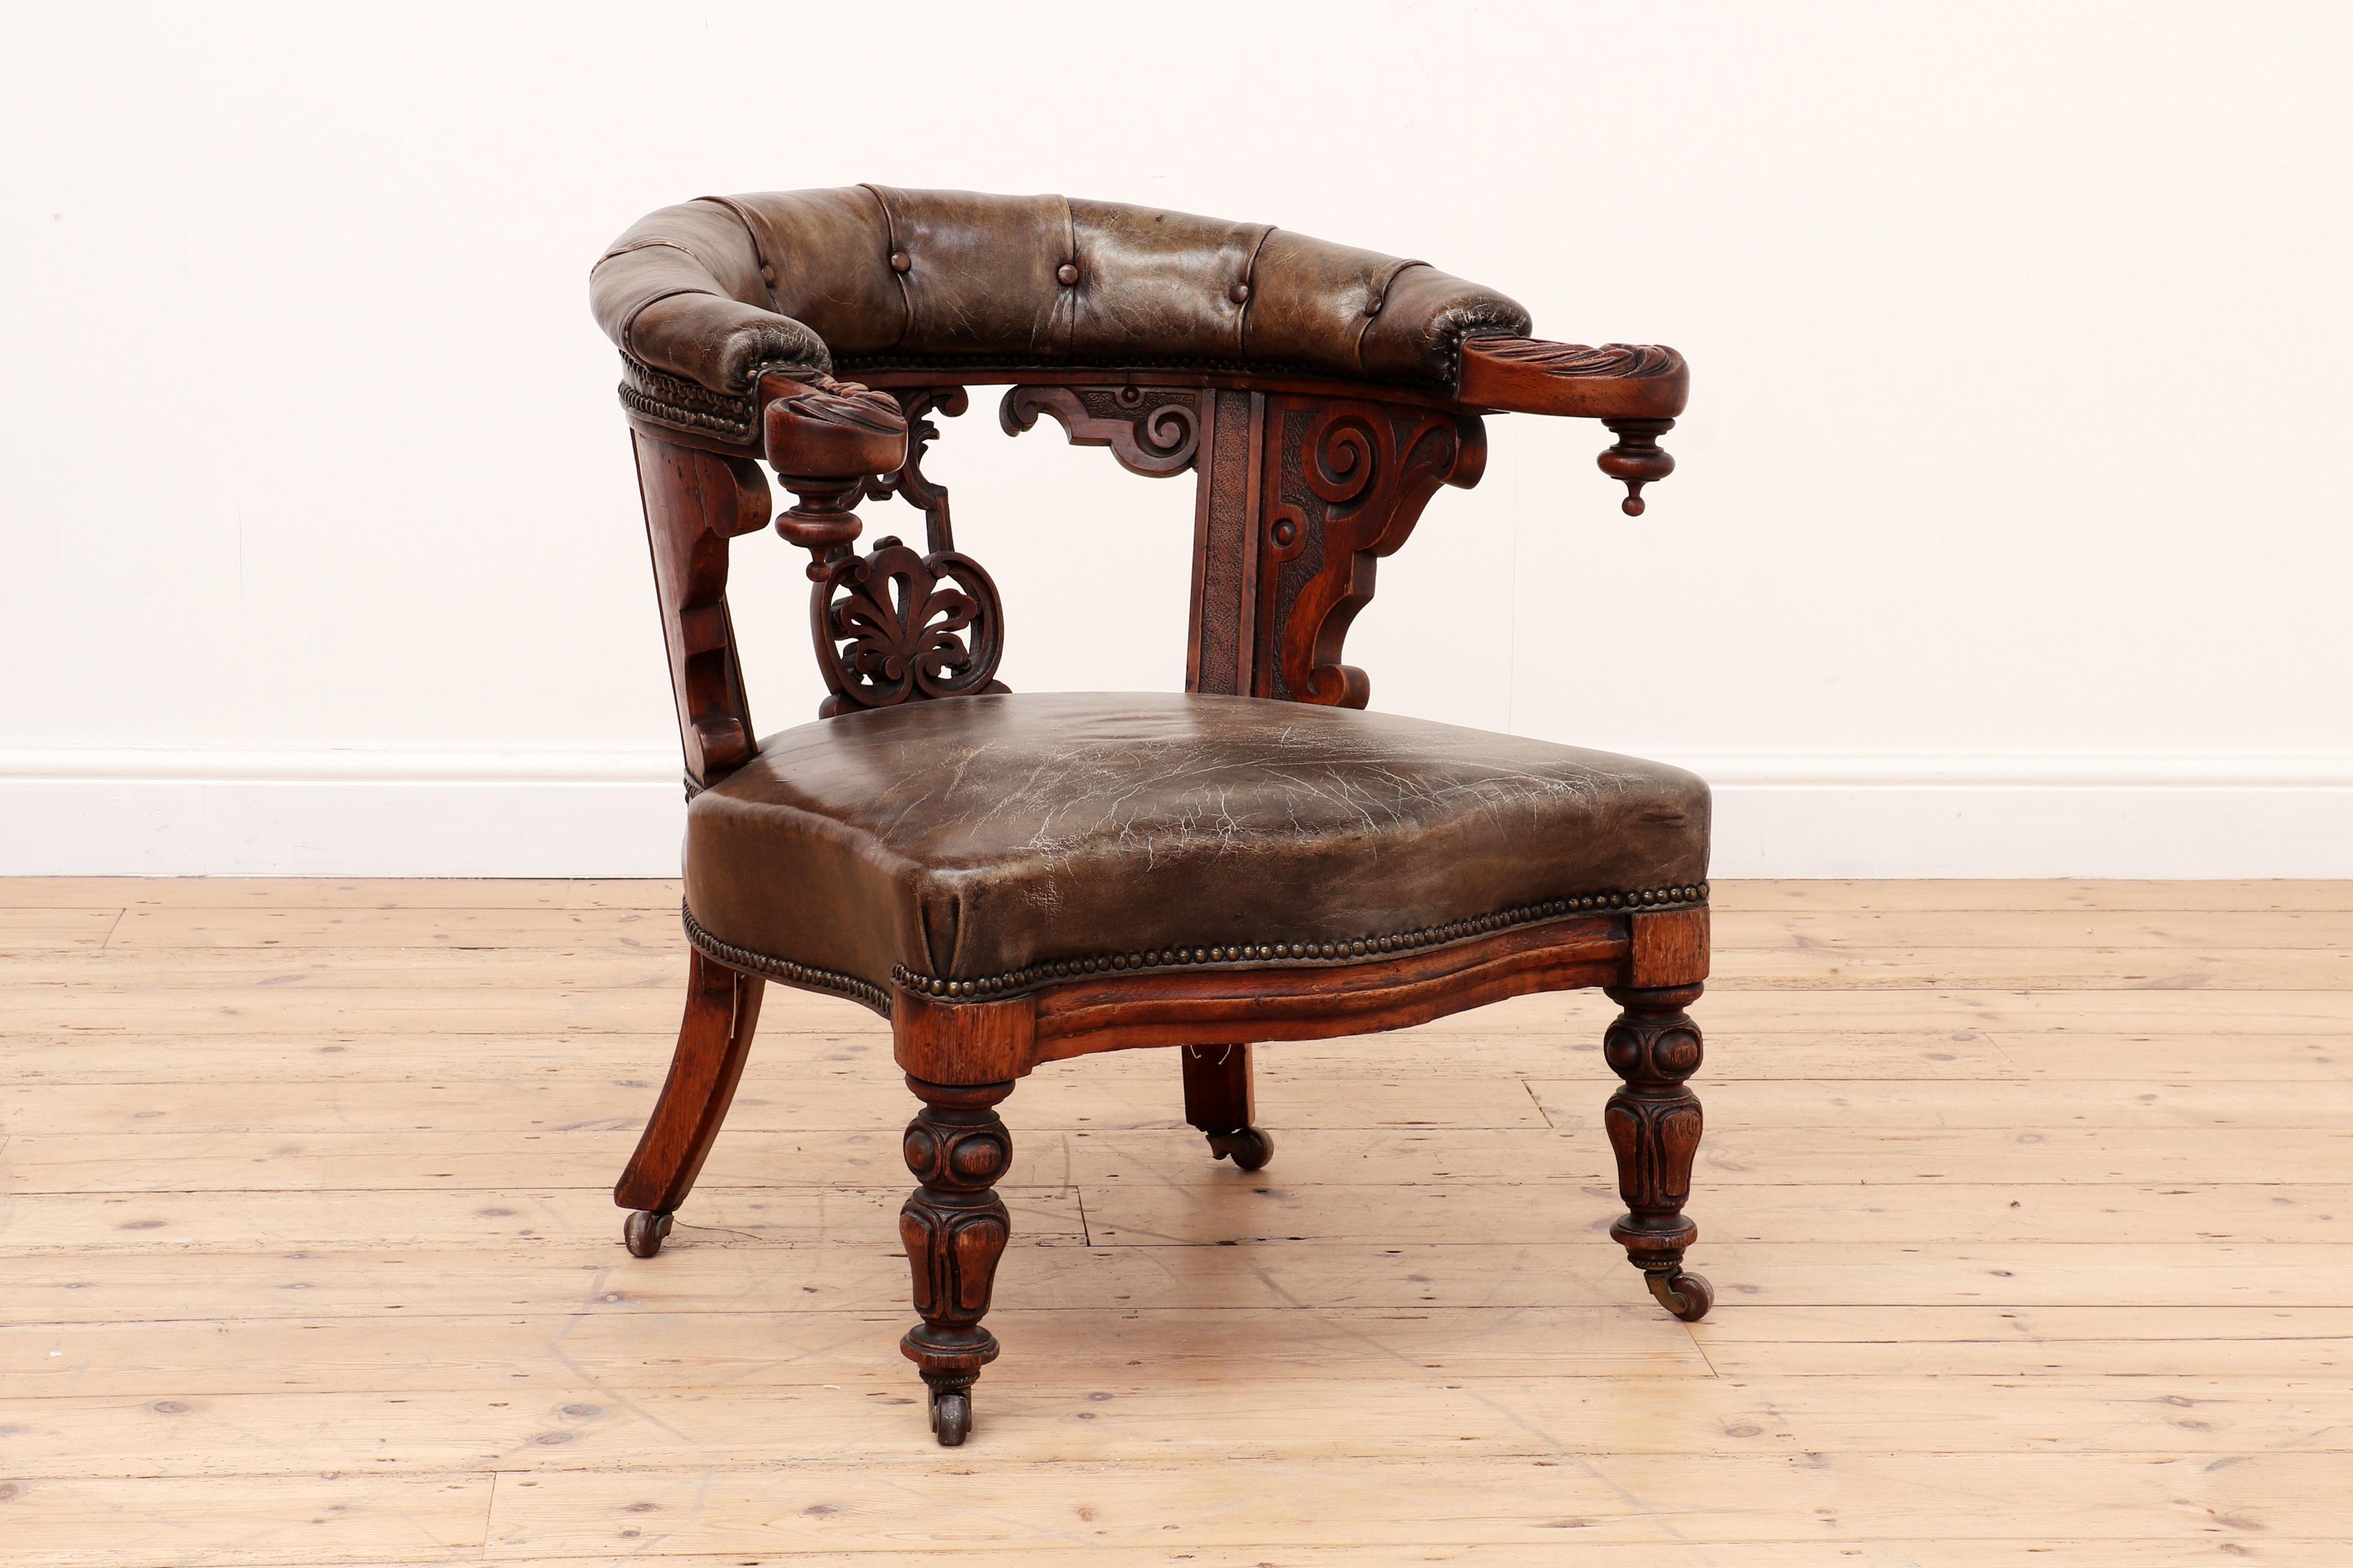 Antike englische 19. Jahrhundert Georgian Gillows von Lancaster Leder Bibliothek Stuhl c.1830

Ein Sessel aus Eiche und Leder. Die geschwungene Rückenlehne endet in geschwungenen Armen über einer geformten Leiste und einem gepolsterten Sitz, auf